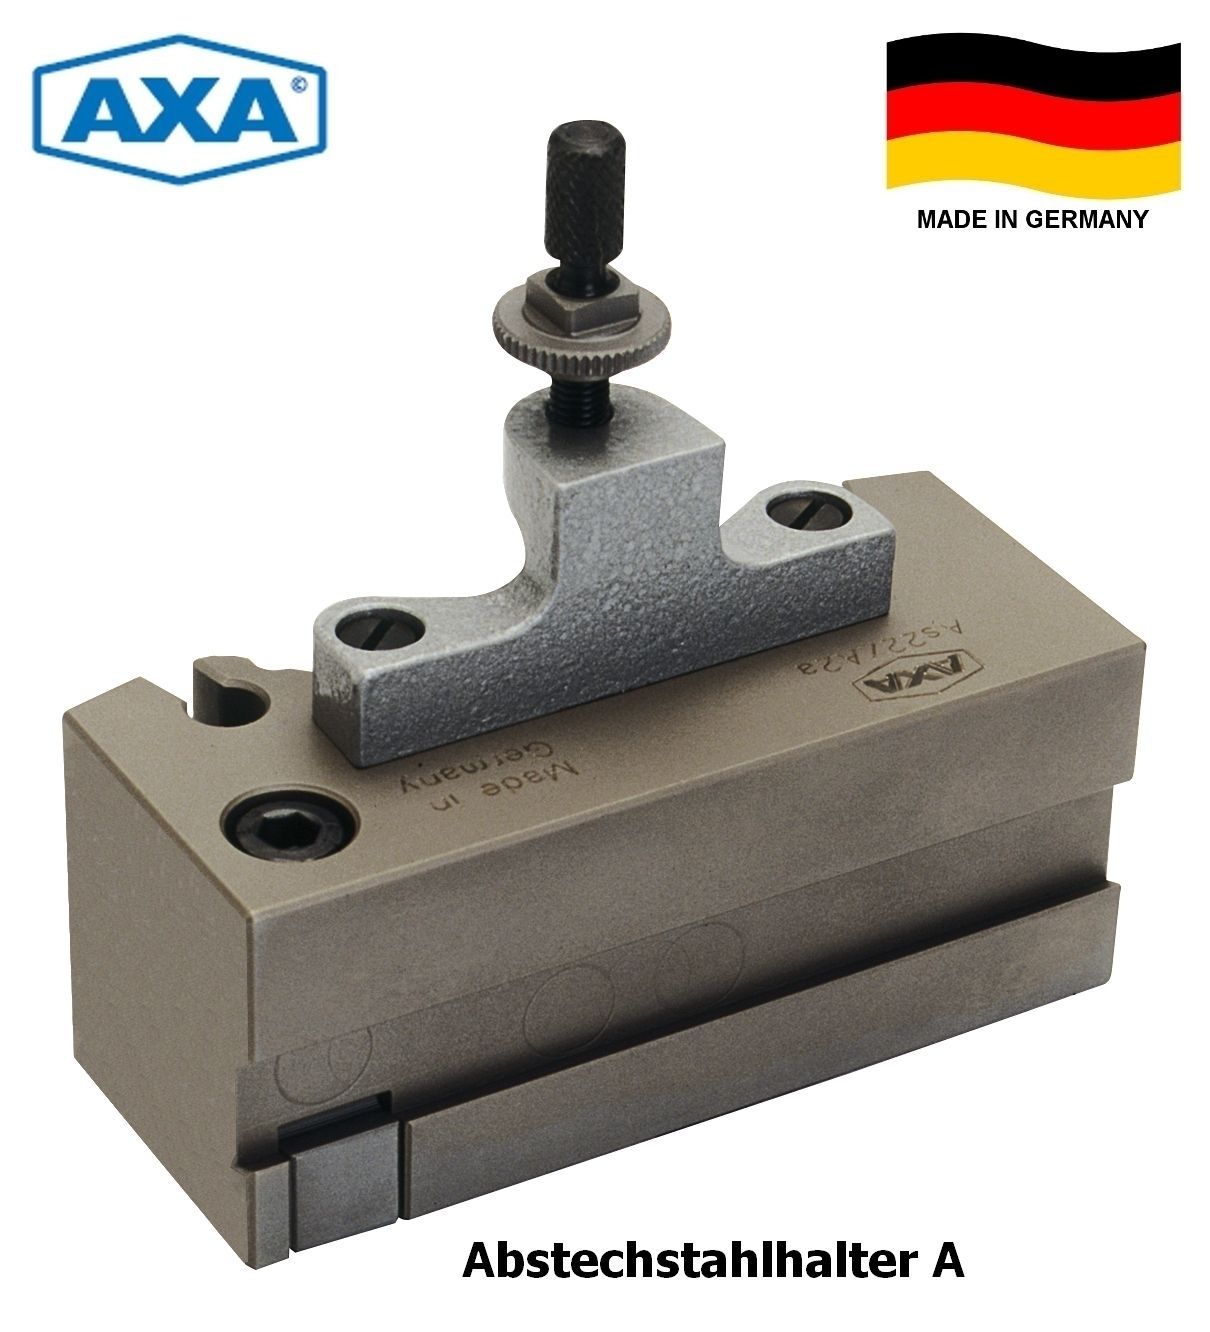 AXA Schnellwechsel-Abstechhalter B | As22 - A2A